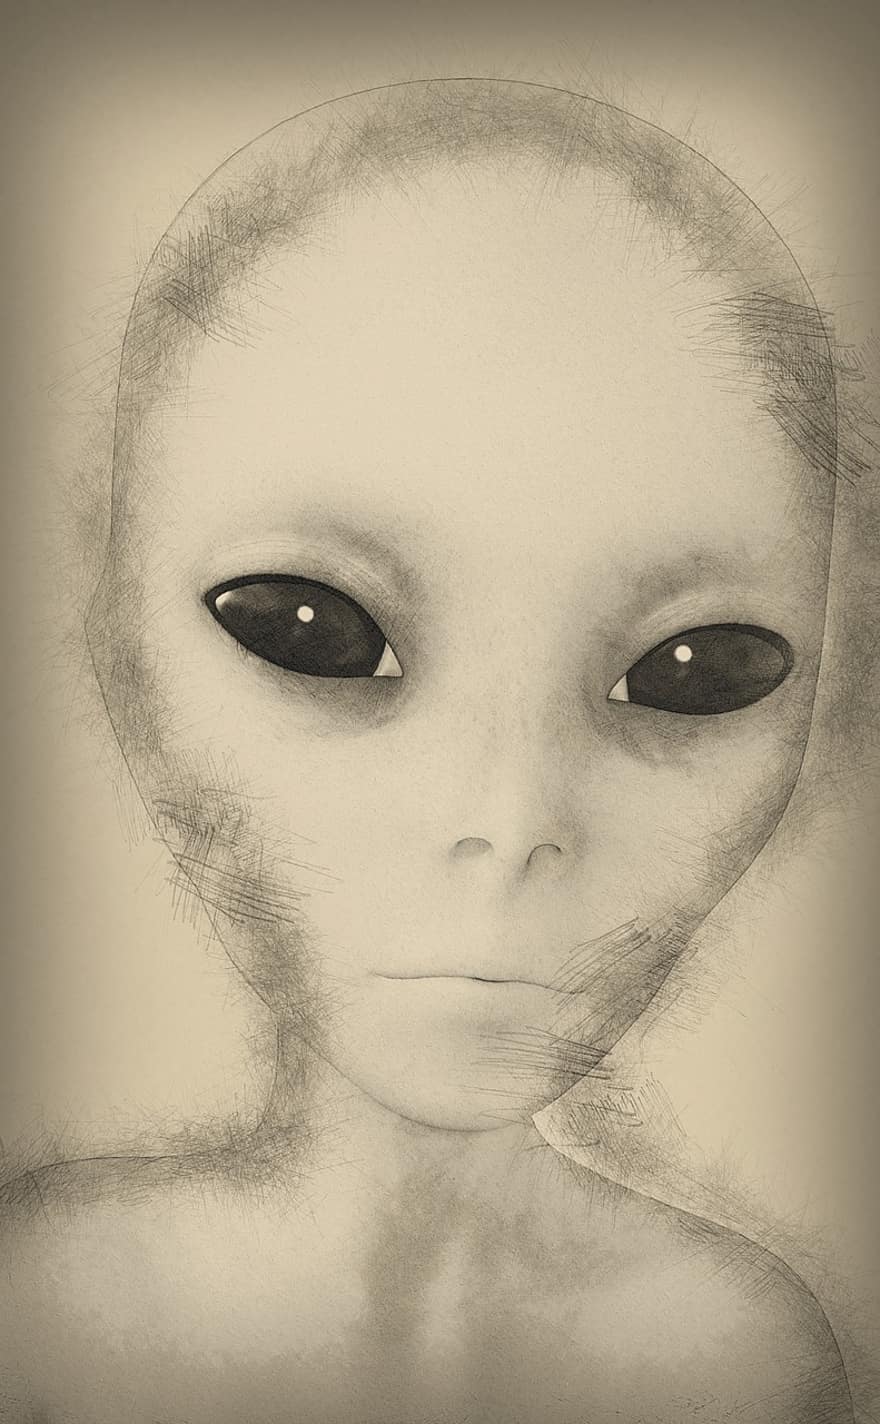 alien, udenjordisk, scifi, menneskelignende